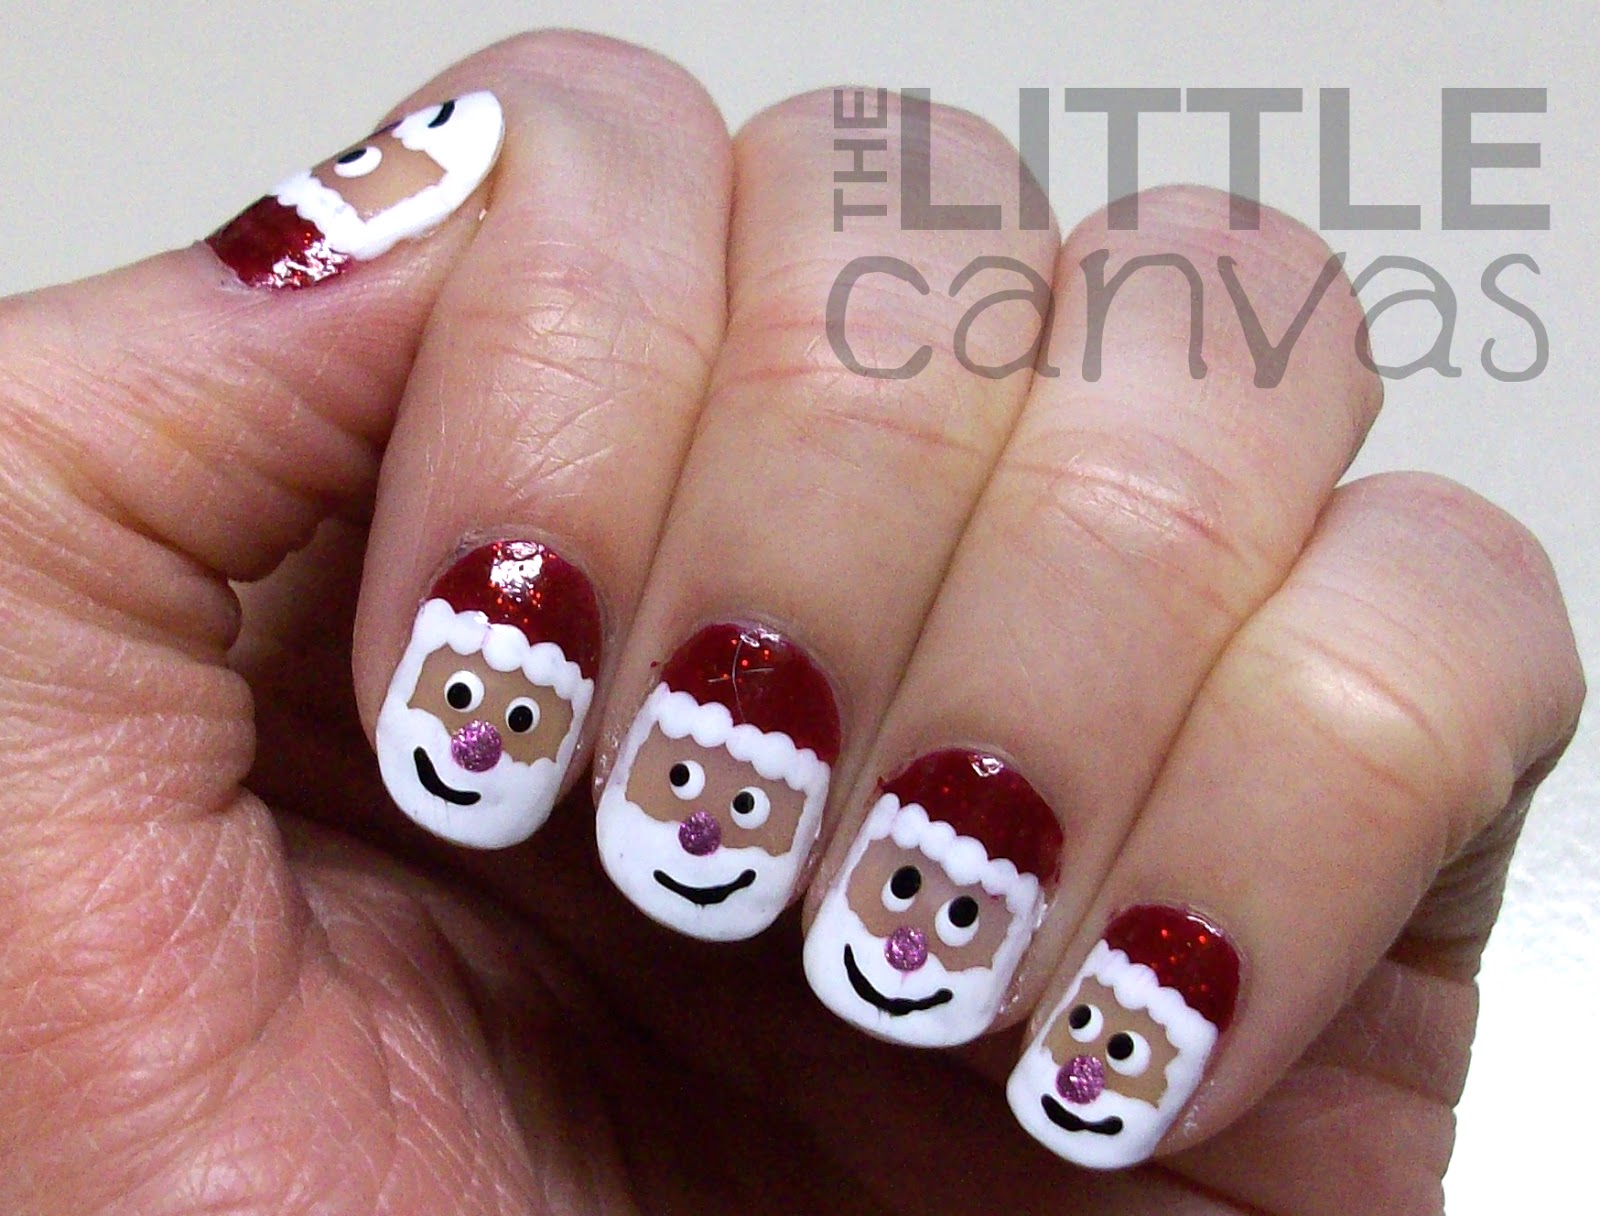 7. Santa Claus Nail Art for Short Nails - wide 5